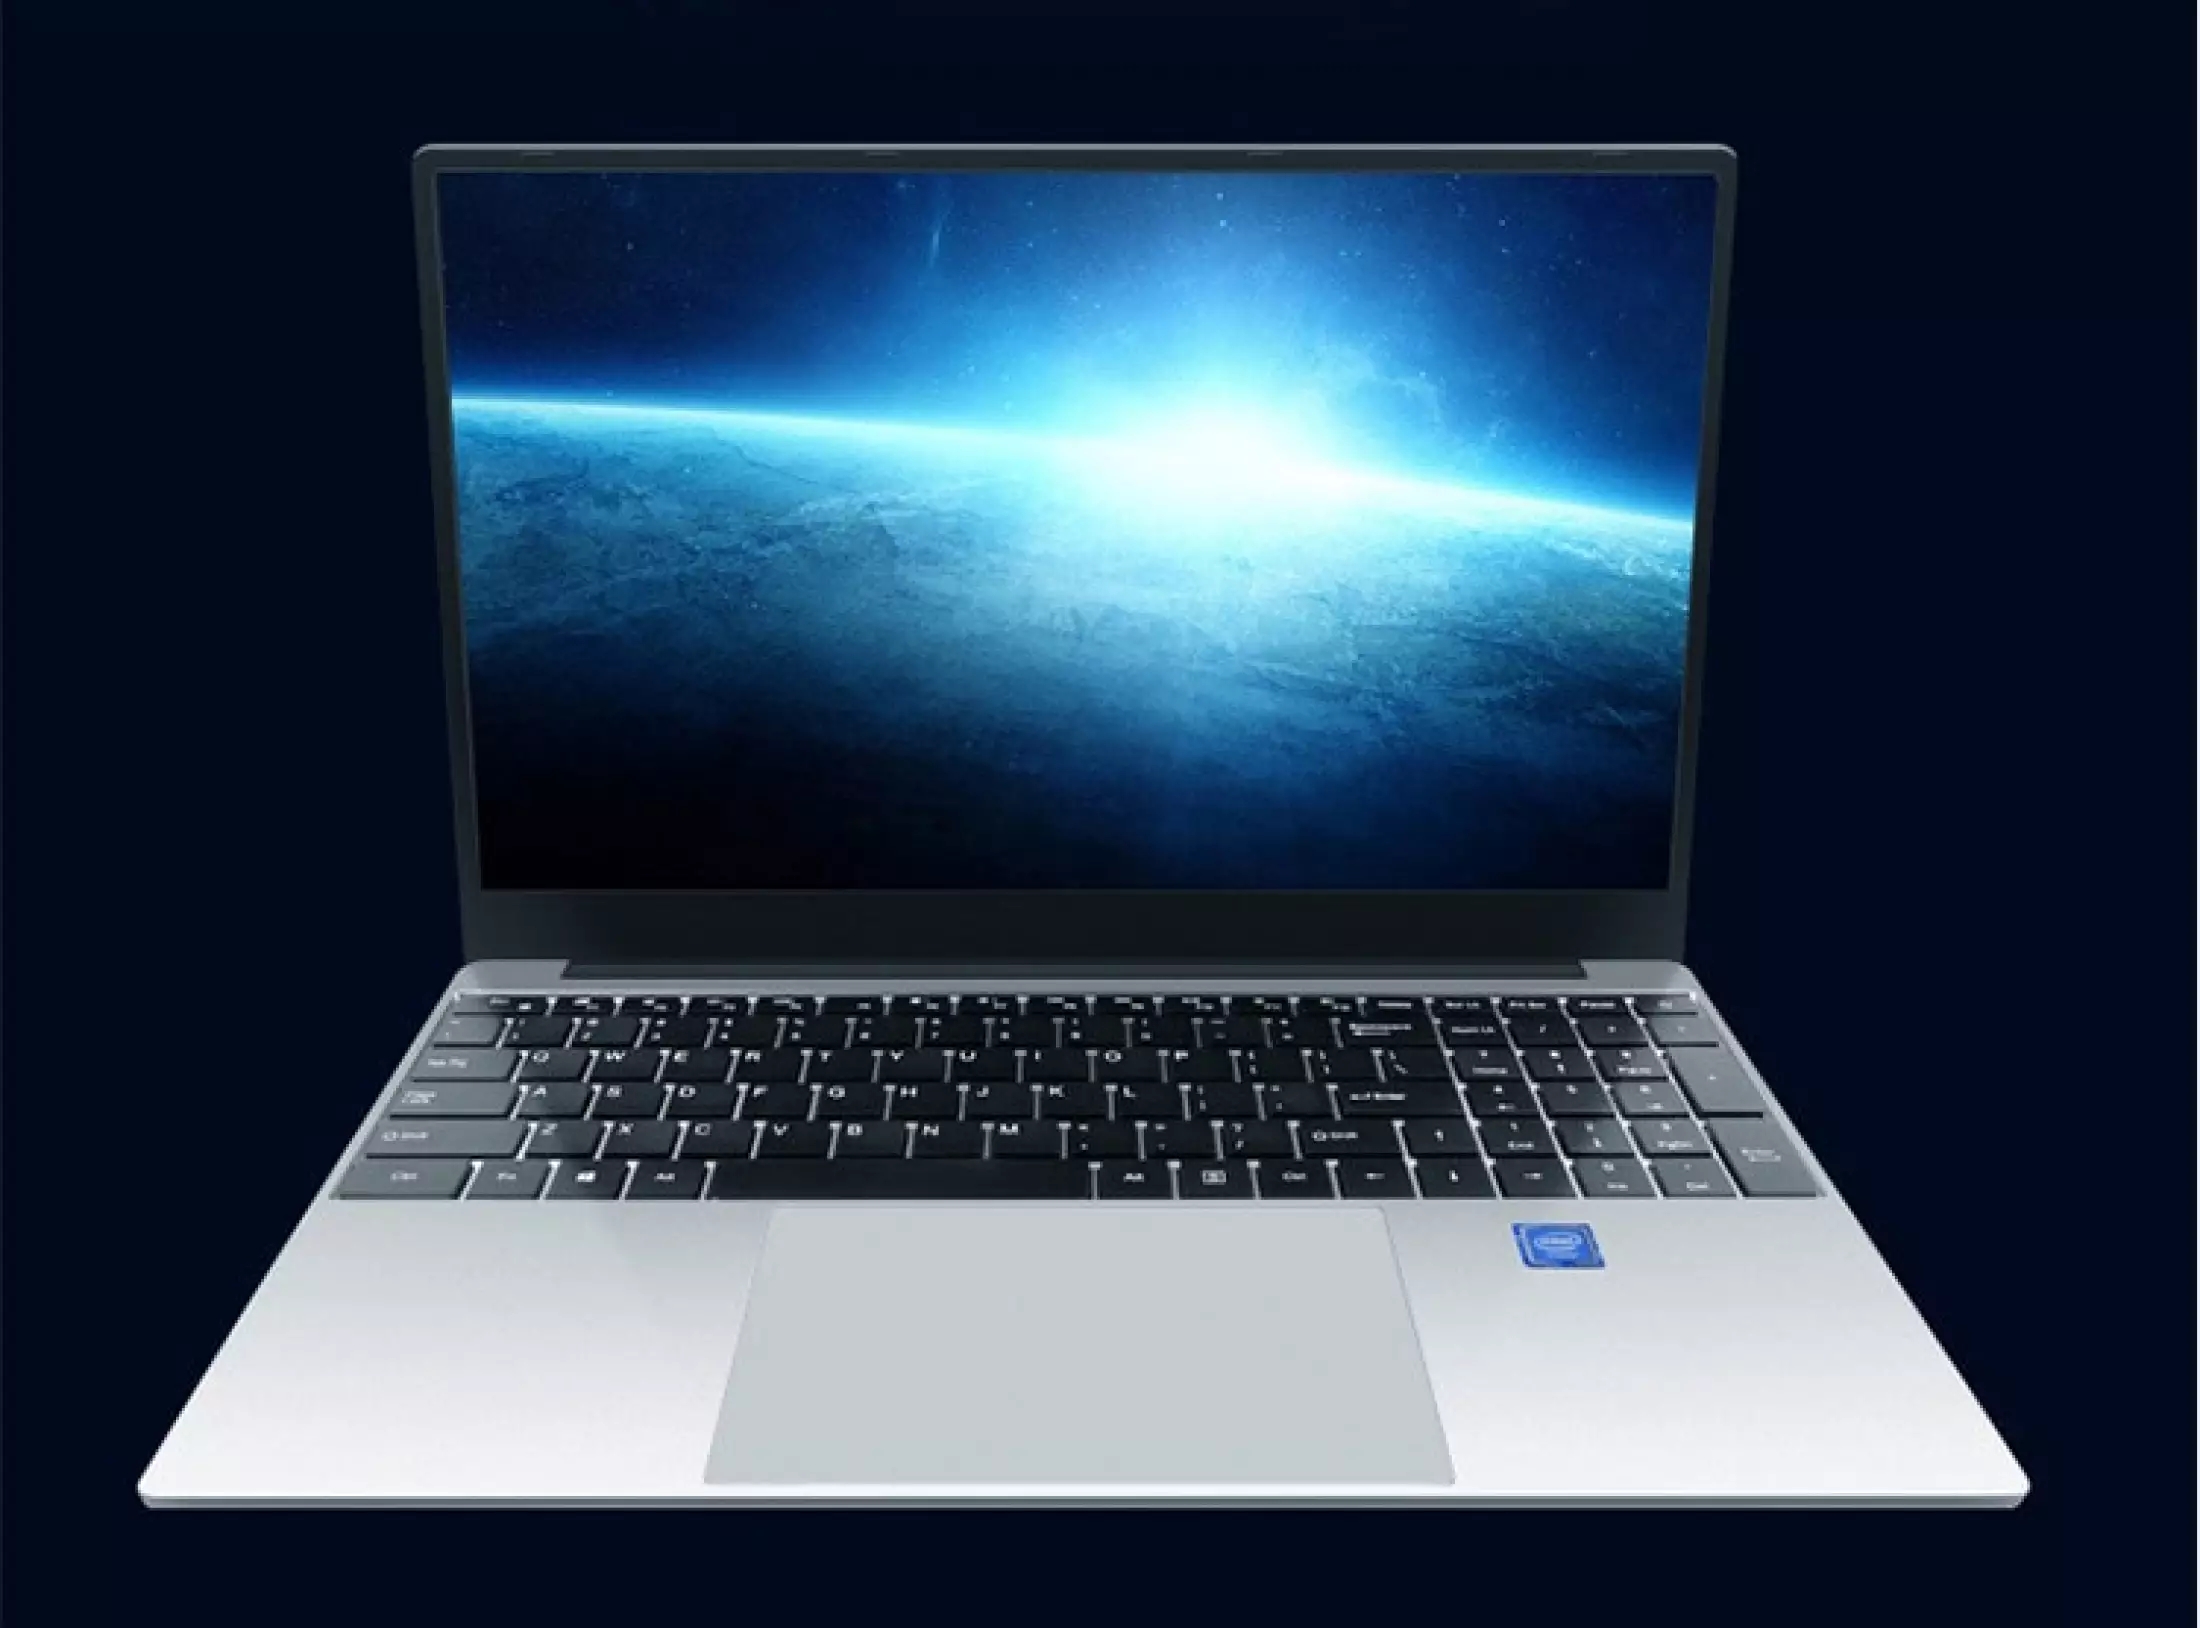 [ใหม่เอี่ยม]ระบบ Window10 ระบบของภาษาไทย แปลภาษาไทย Intel Celeron N4100 laptops computer core i7 ใหม่เอี่ยม คอมพิวเตอร์โน๊ตบุ๊ค แล็ปท็อป Notebook Intel i7-4500u LED 15.6 นิ้ว 1920×1080 IPS RAM8G SSD 128G สามารถตั้งค่าภาษาไทย